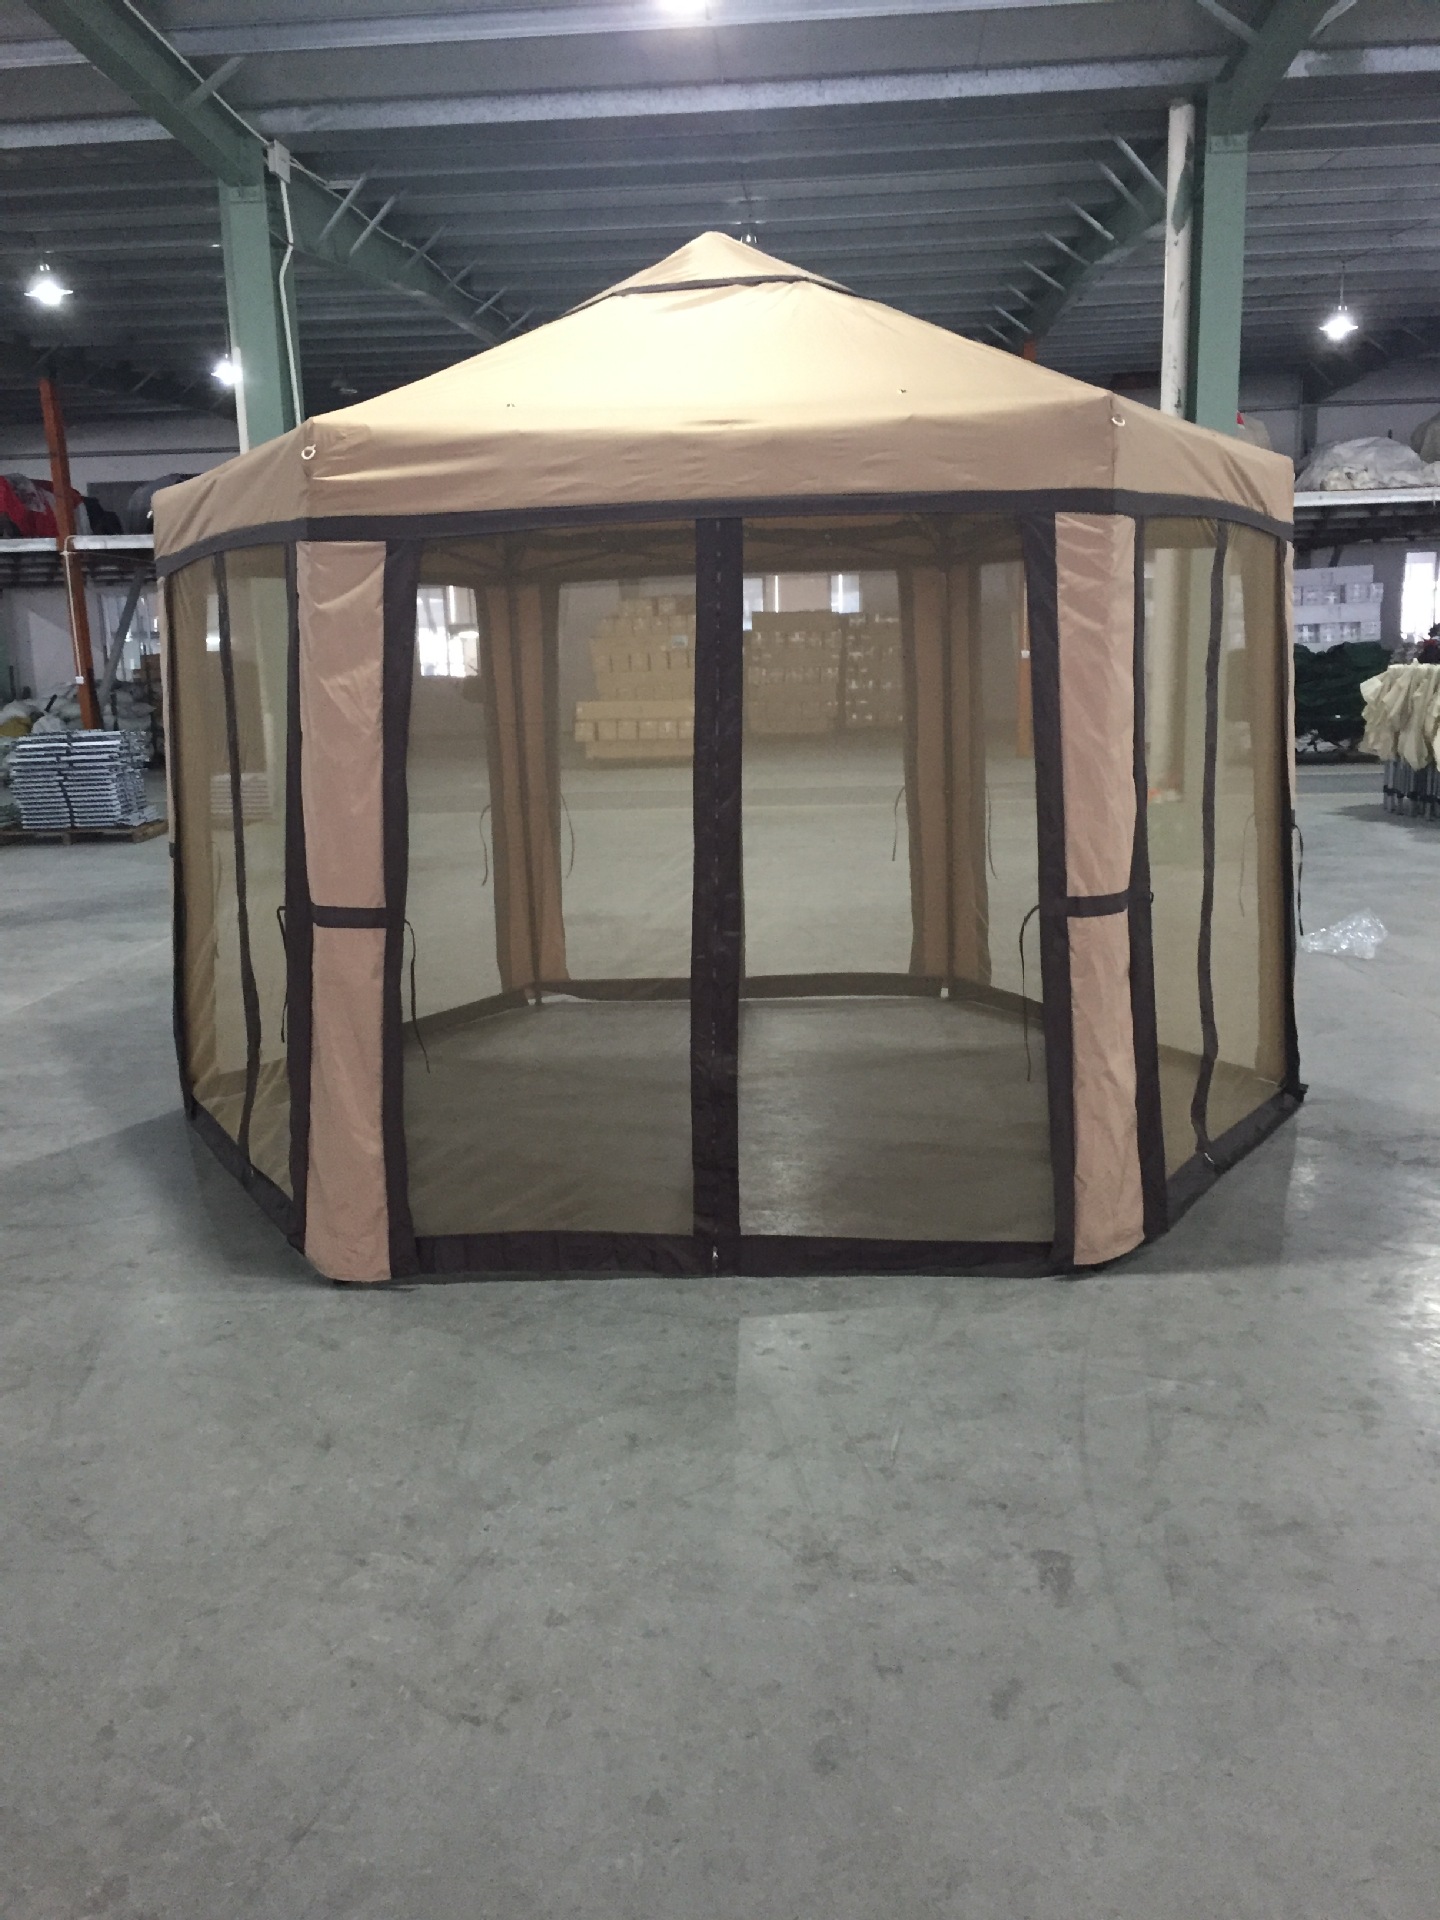 Uplion Luxury wholesale outdoor sunshade gazebo tent folding canopy pop-up gazebo with mosquito net